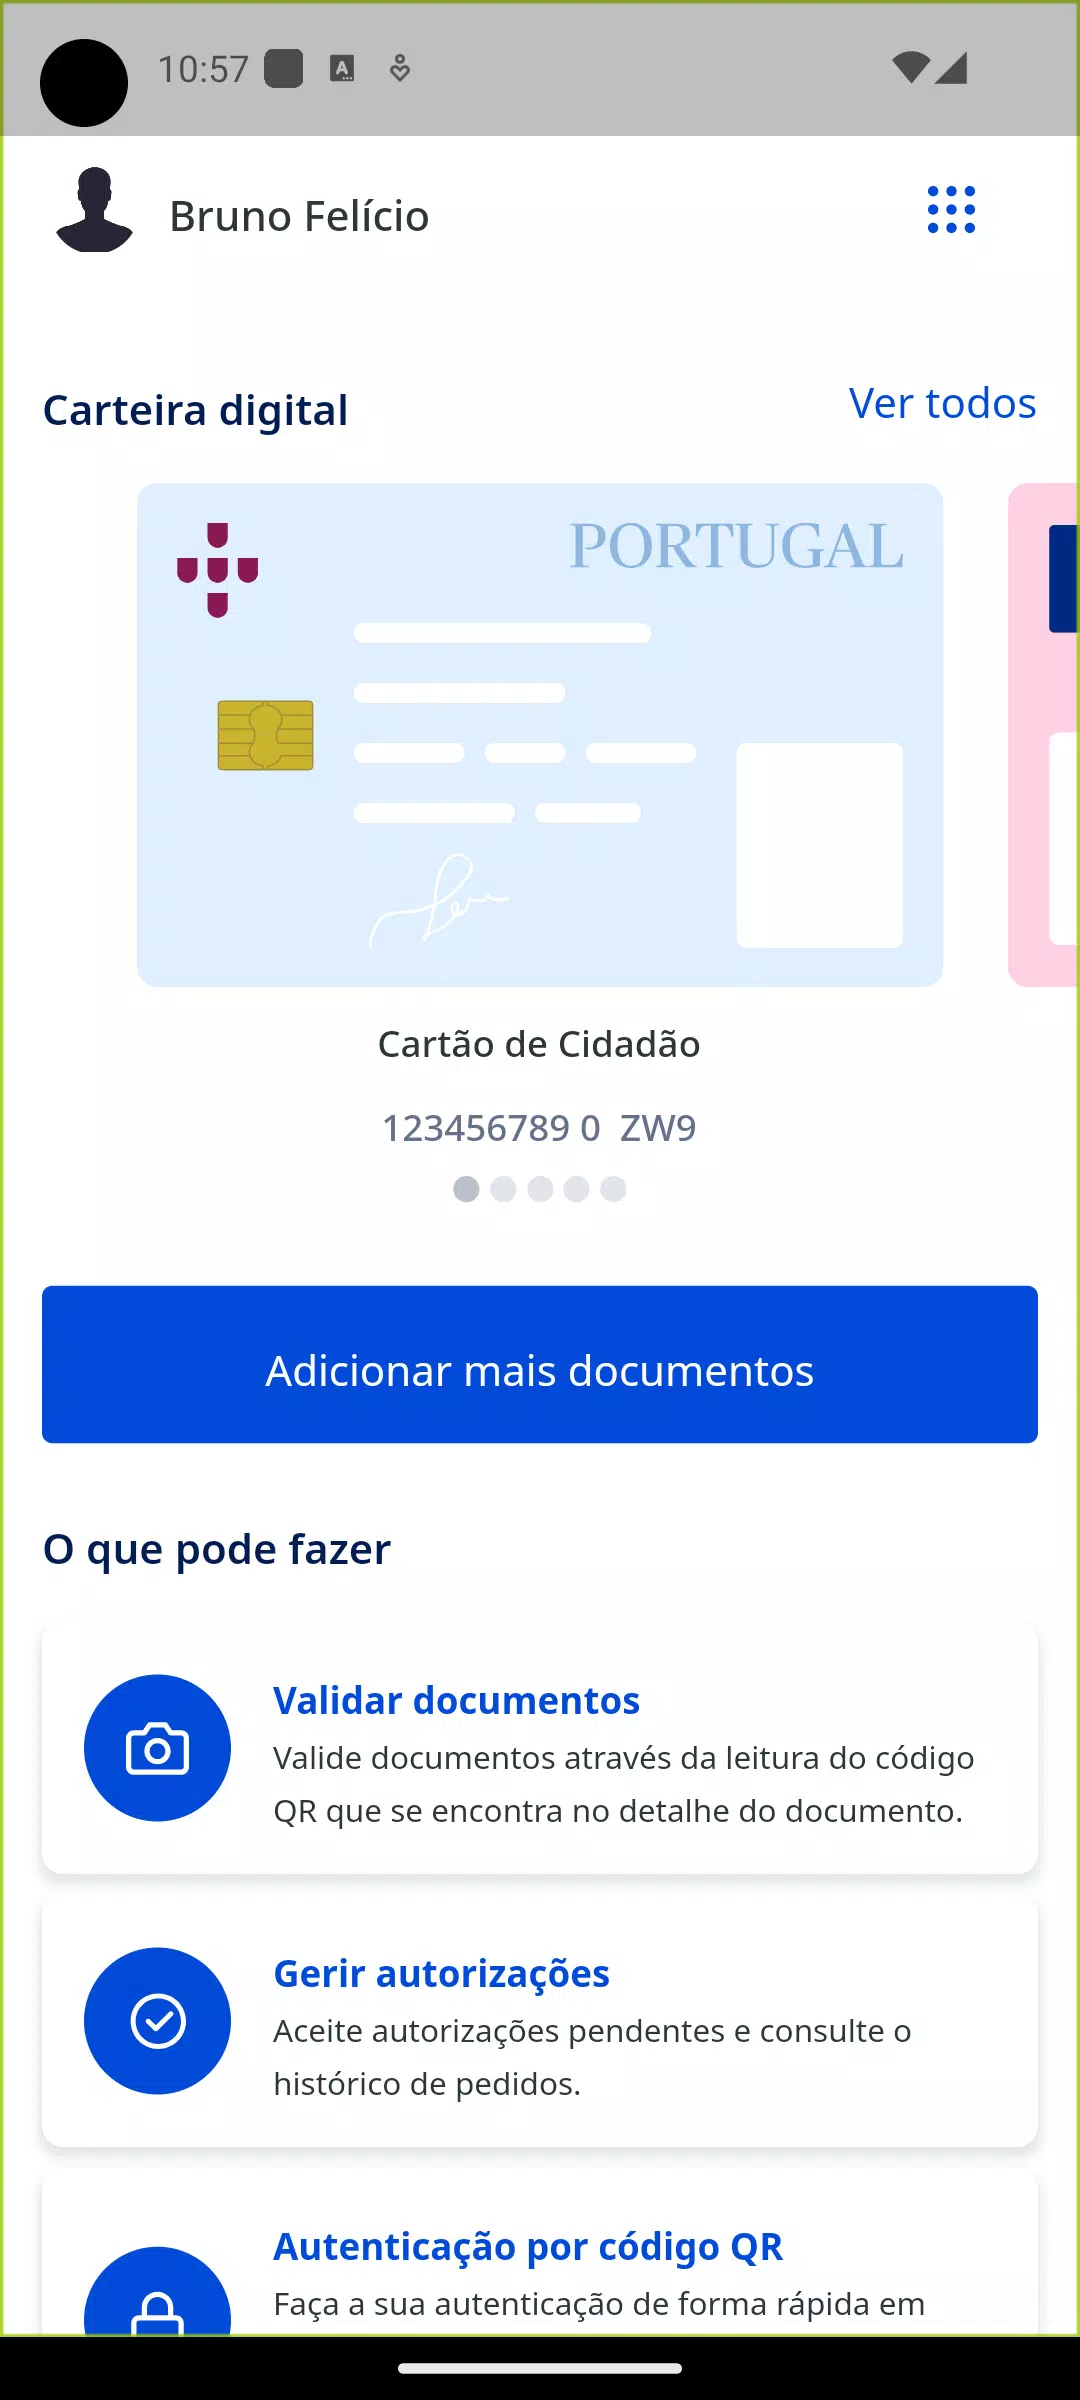 Download CARTÃO CIDADÃO Free for Android - CARTÃO CIDADÃO APK